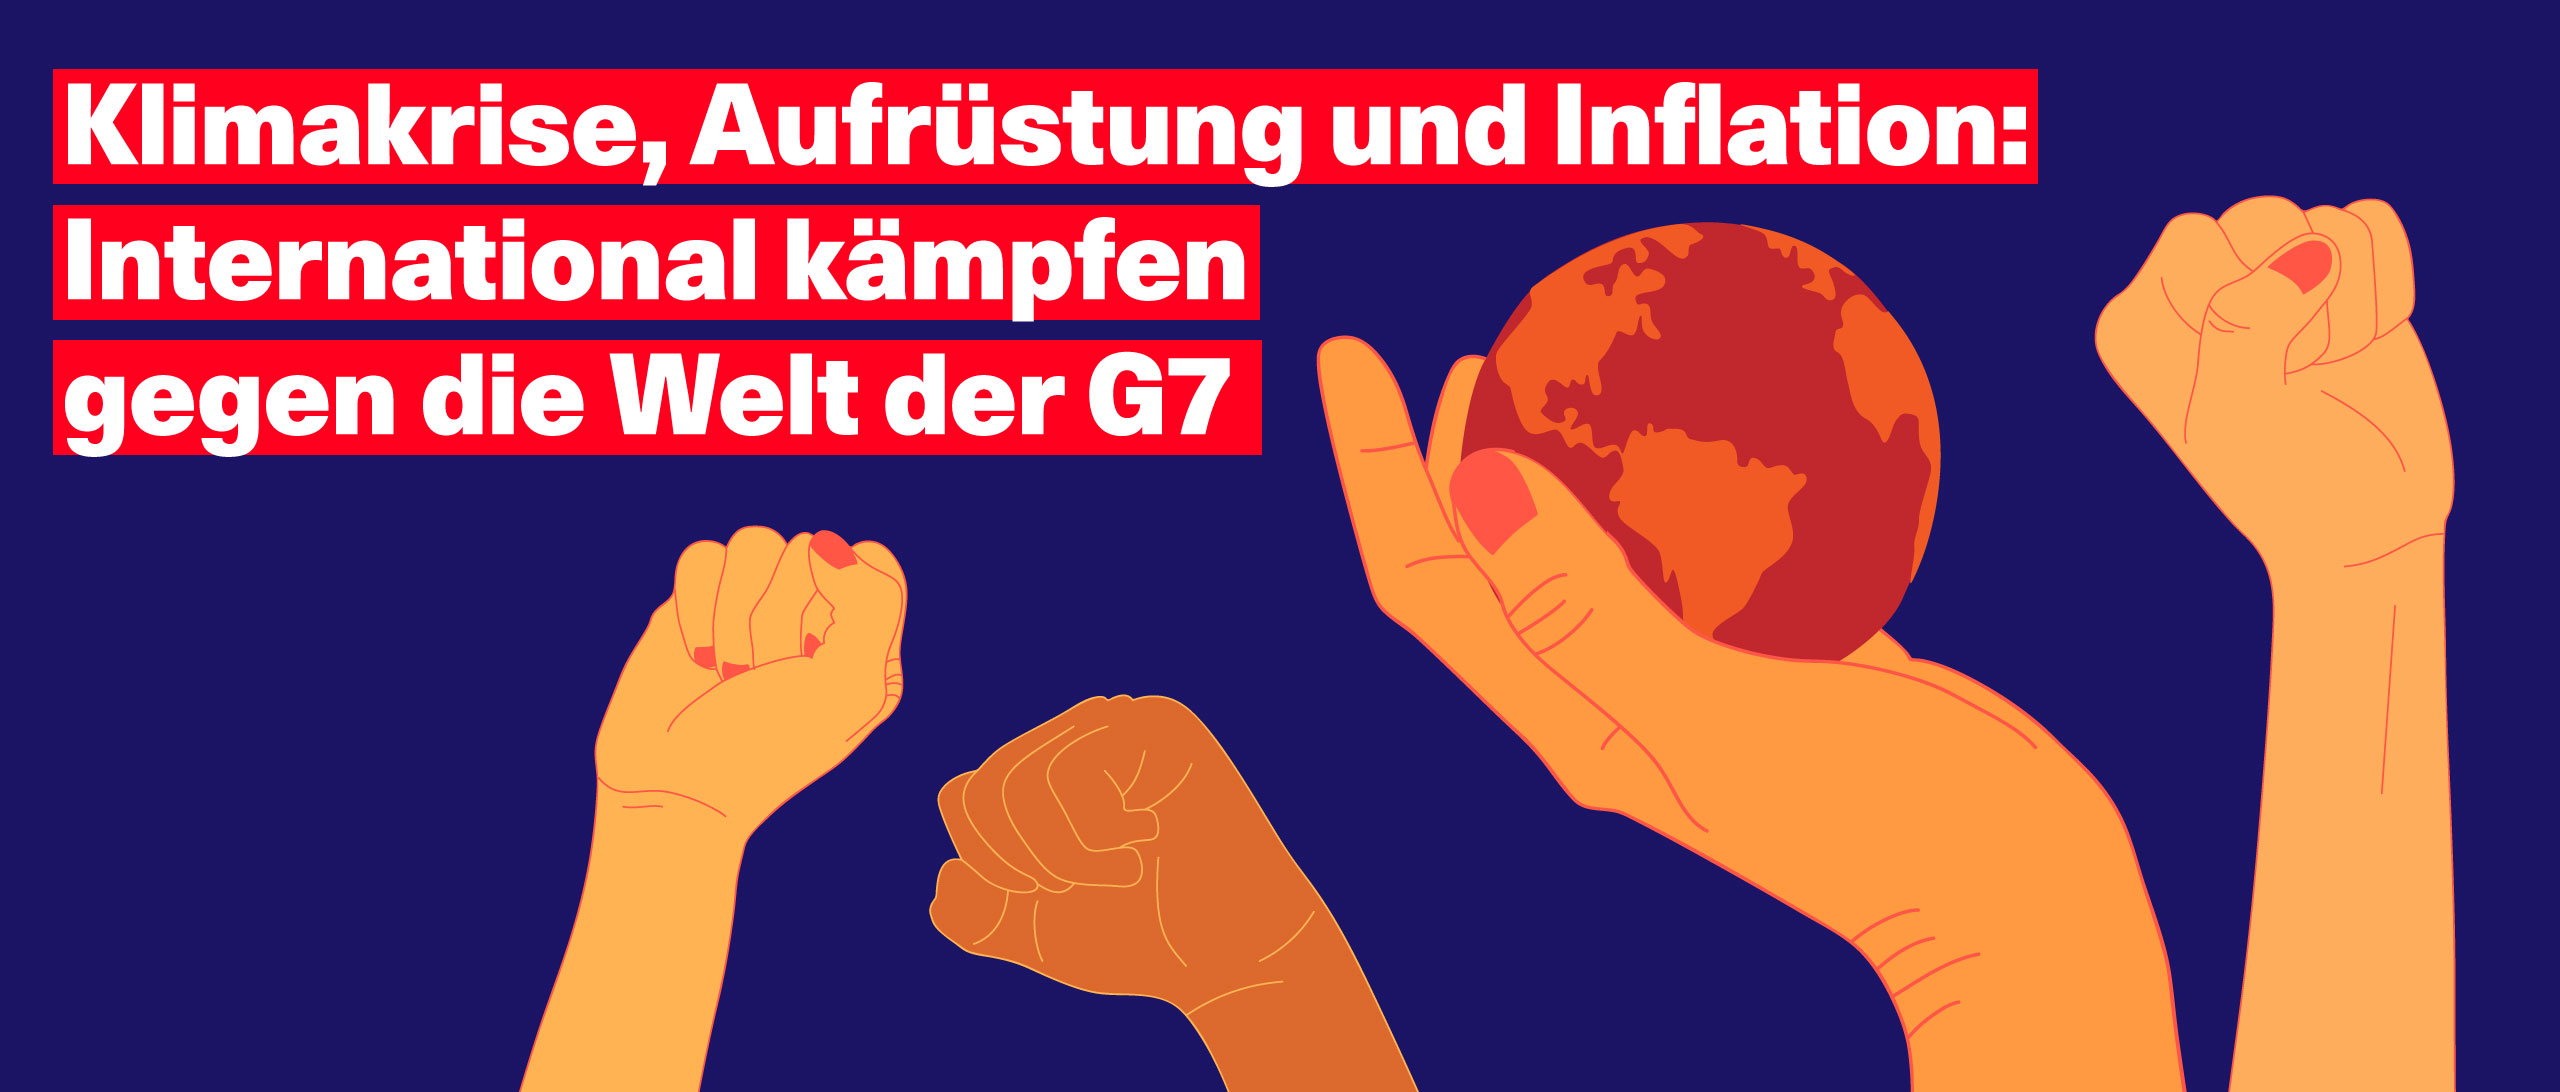 Klimakrise, Aufrüstung und Inflation: International kämpfen gegen die Welt der G7